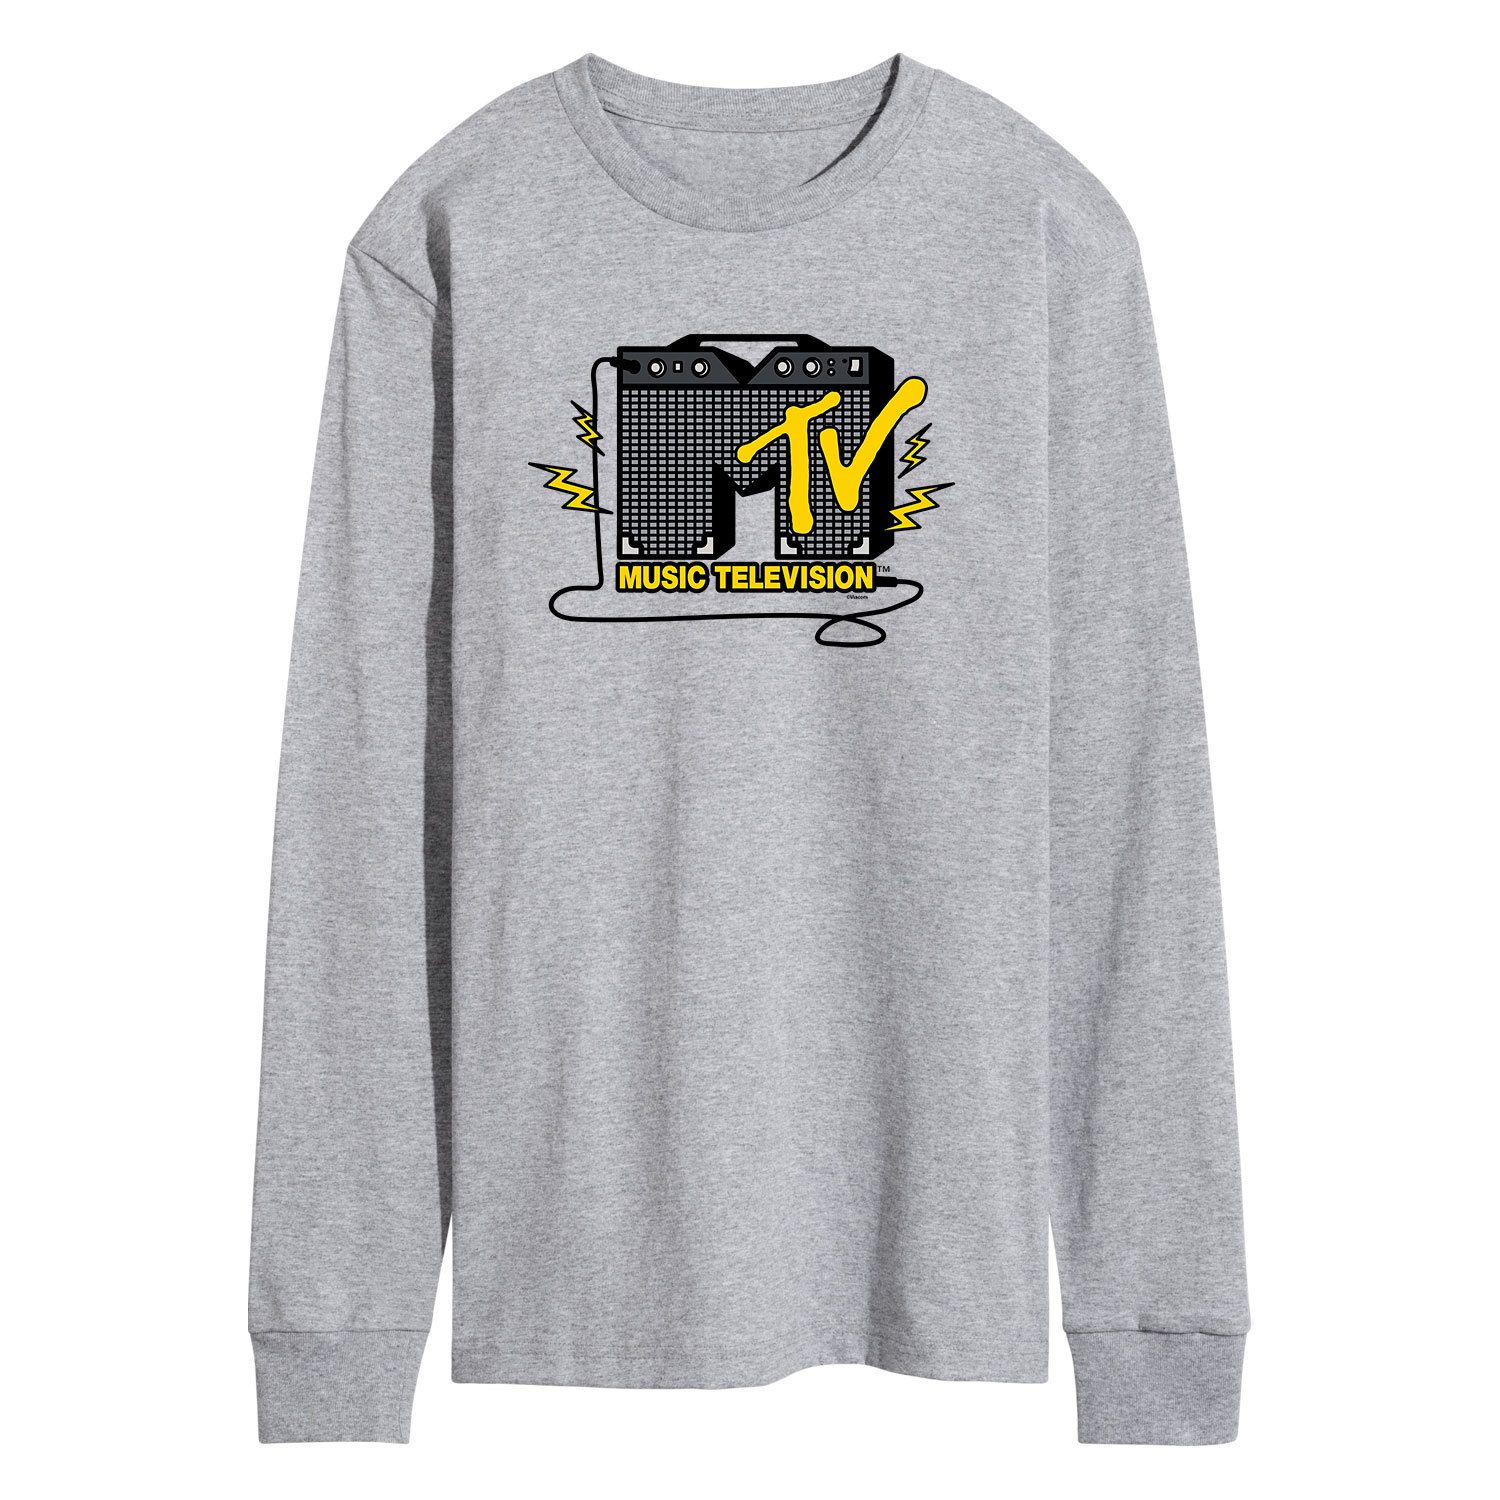 Мужская футболка с усилителем MTV Licensed Character